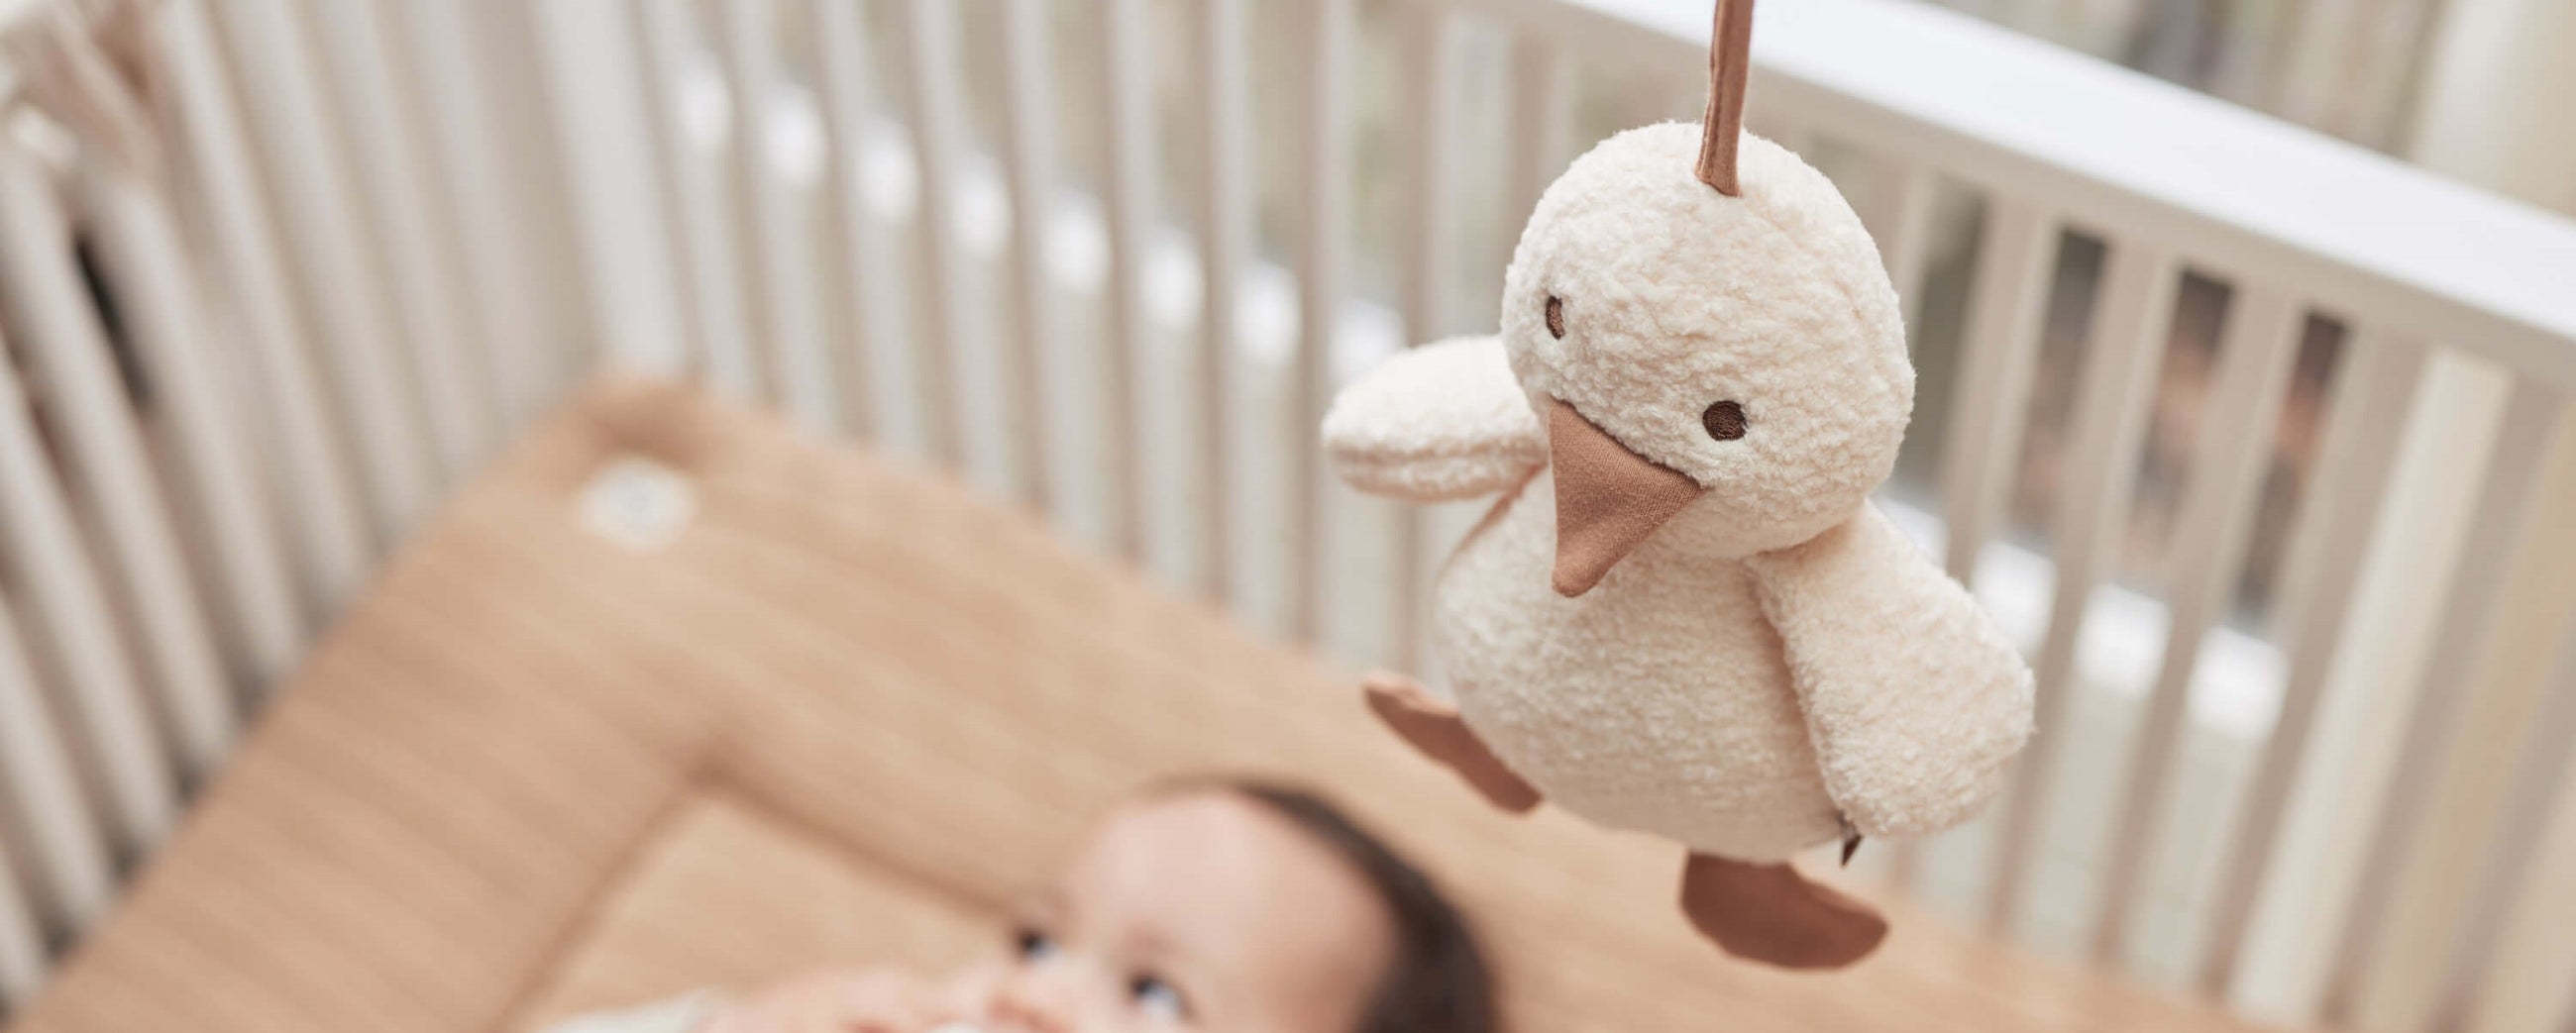 Découvrez notre collection jouets de naissance sur Babykare.fr